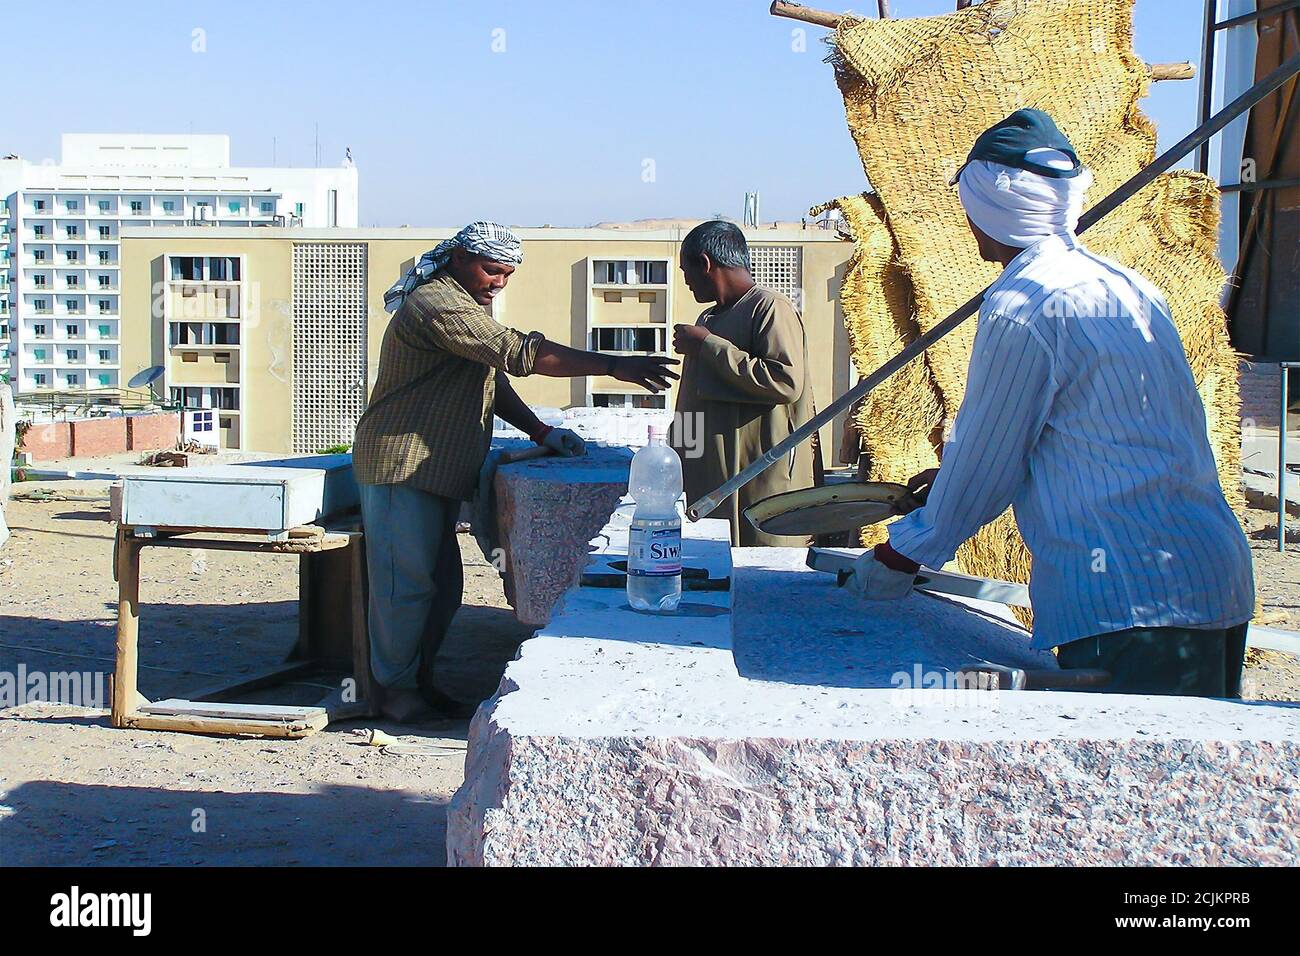 Tagliapietre di granito ad Assuan, preparando un 'simposio internazionale'. Immagine seriale n. 3 Foto Stock